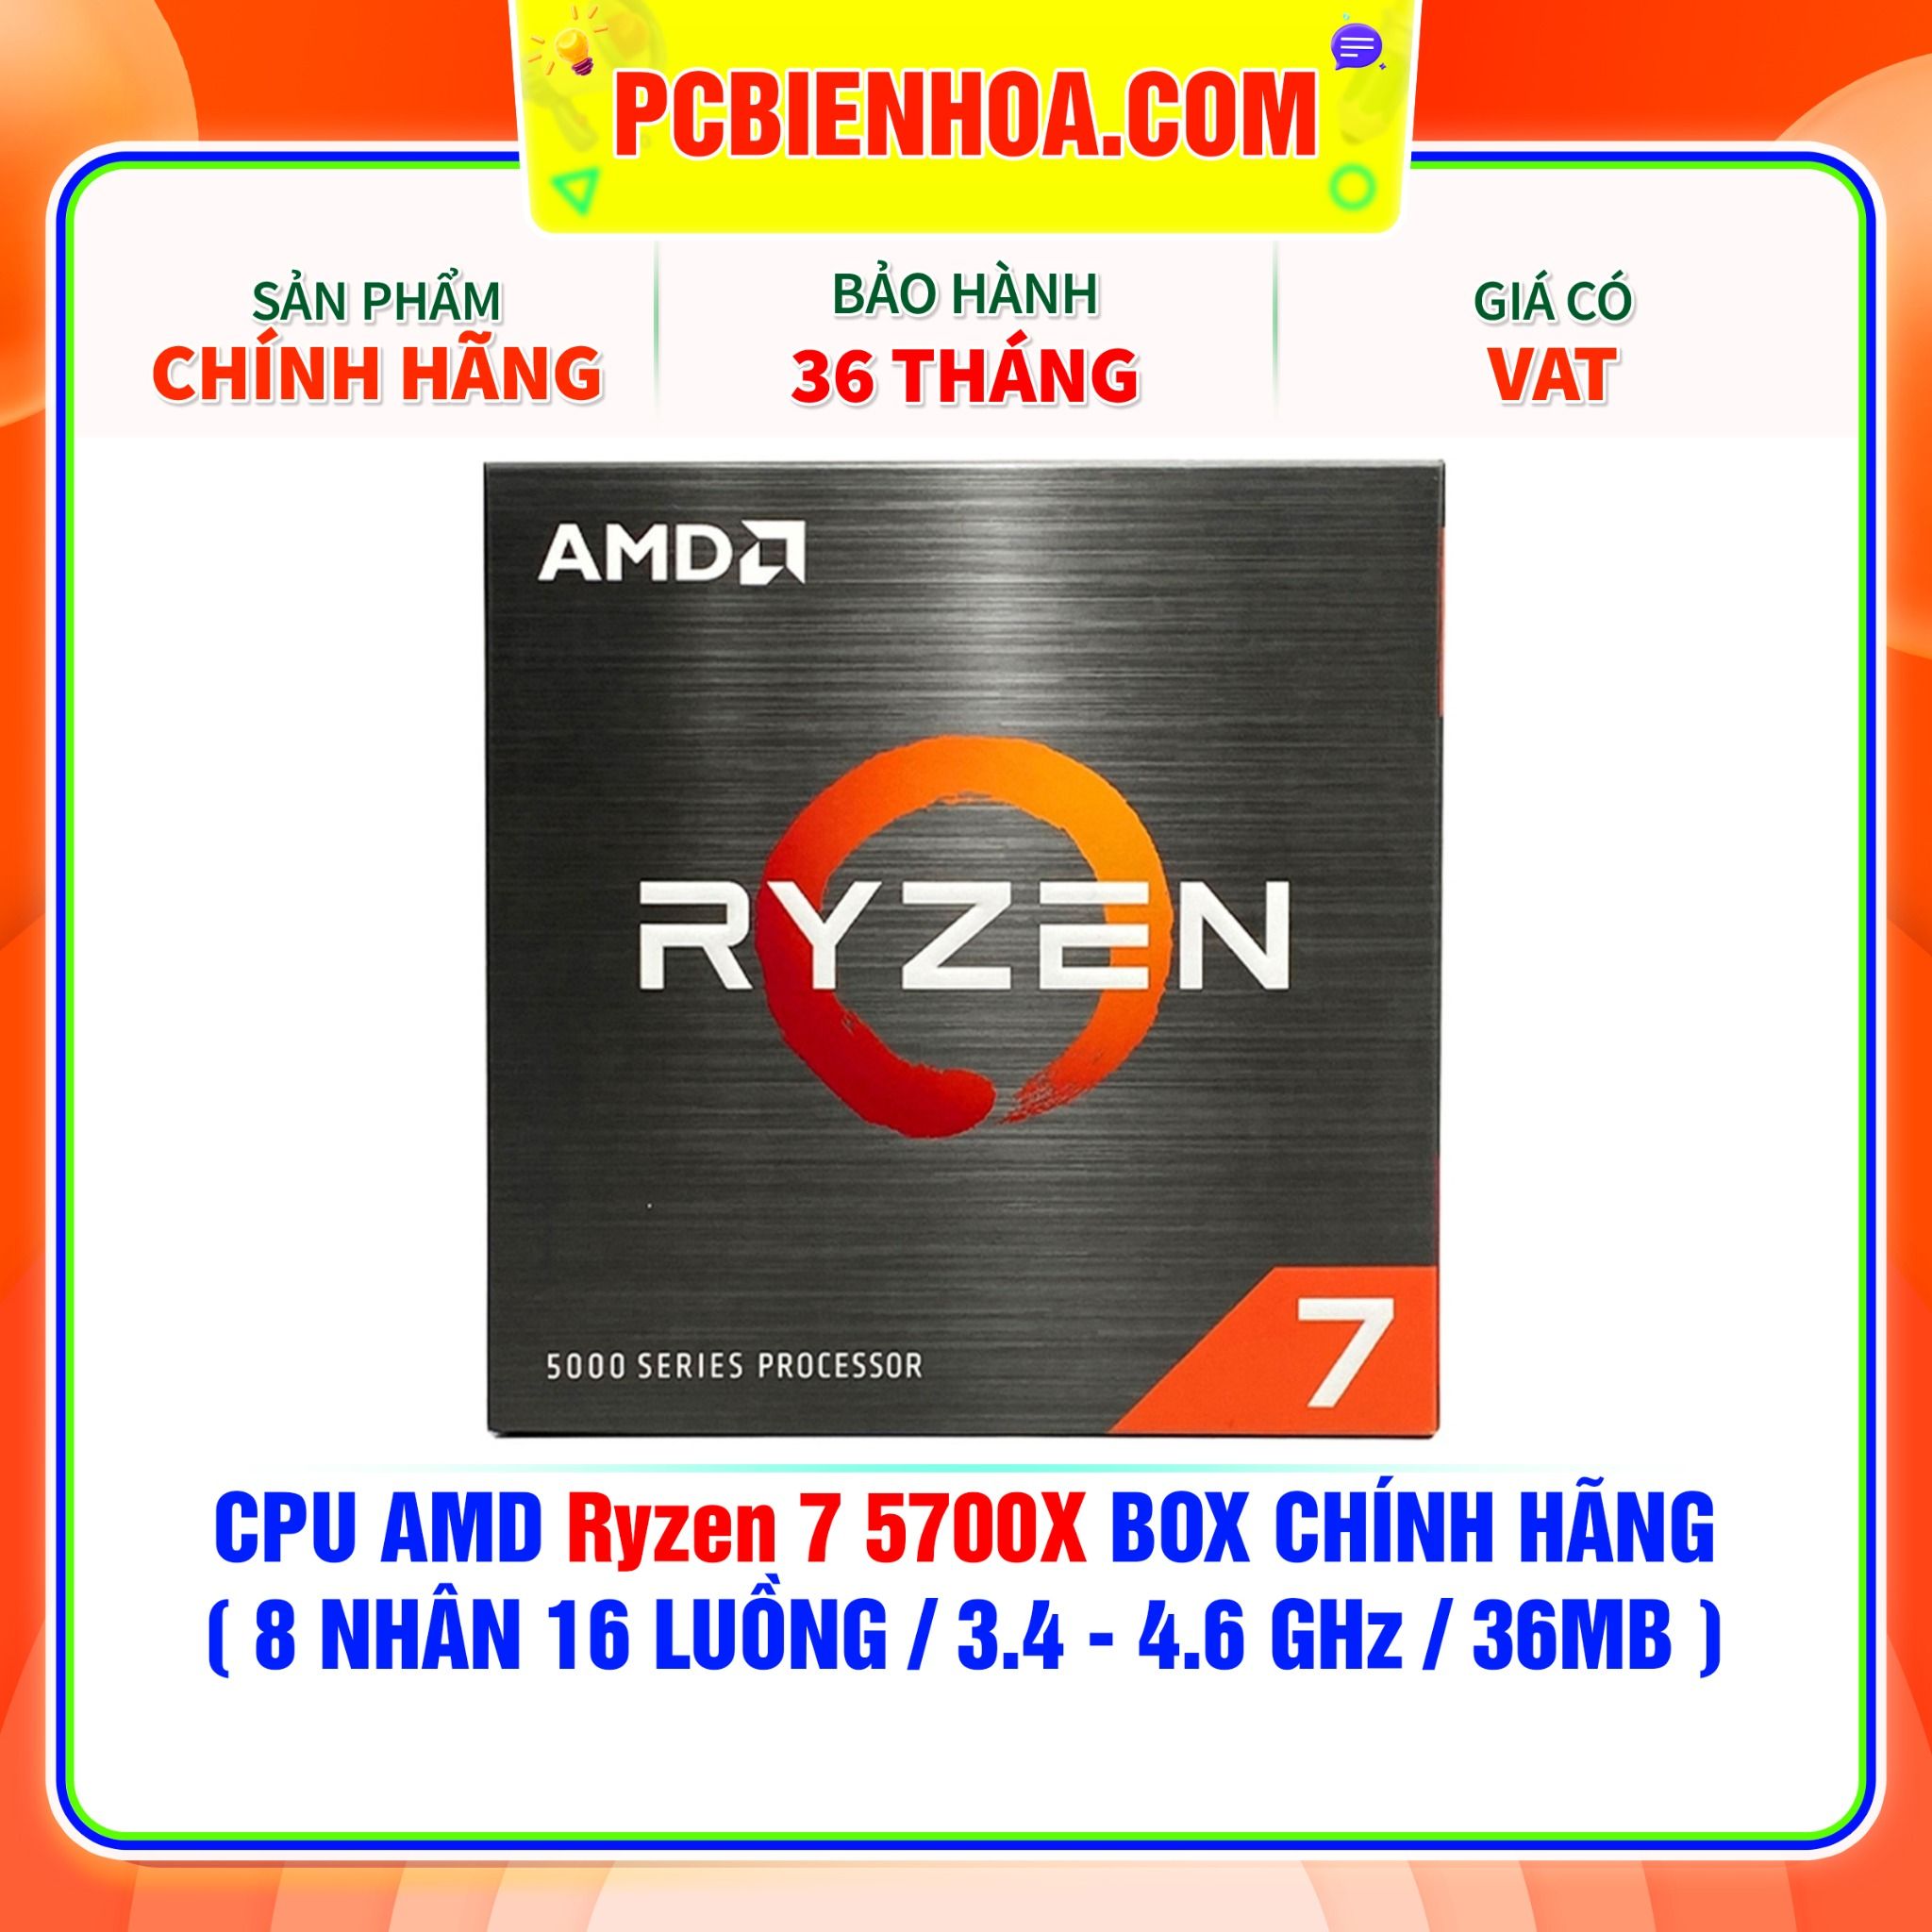  CPU AMD Ryzen 7 5700X BOX CHÍNH HÃNG ( 8 NHÂN 16 LUỒNG / 3.4 - 4.6 GHz / 36MB ) 